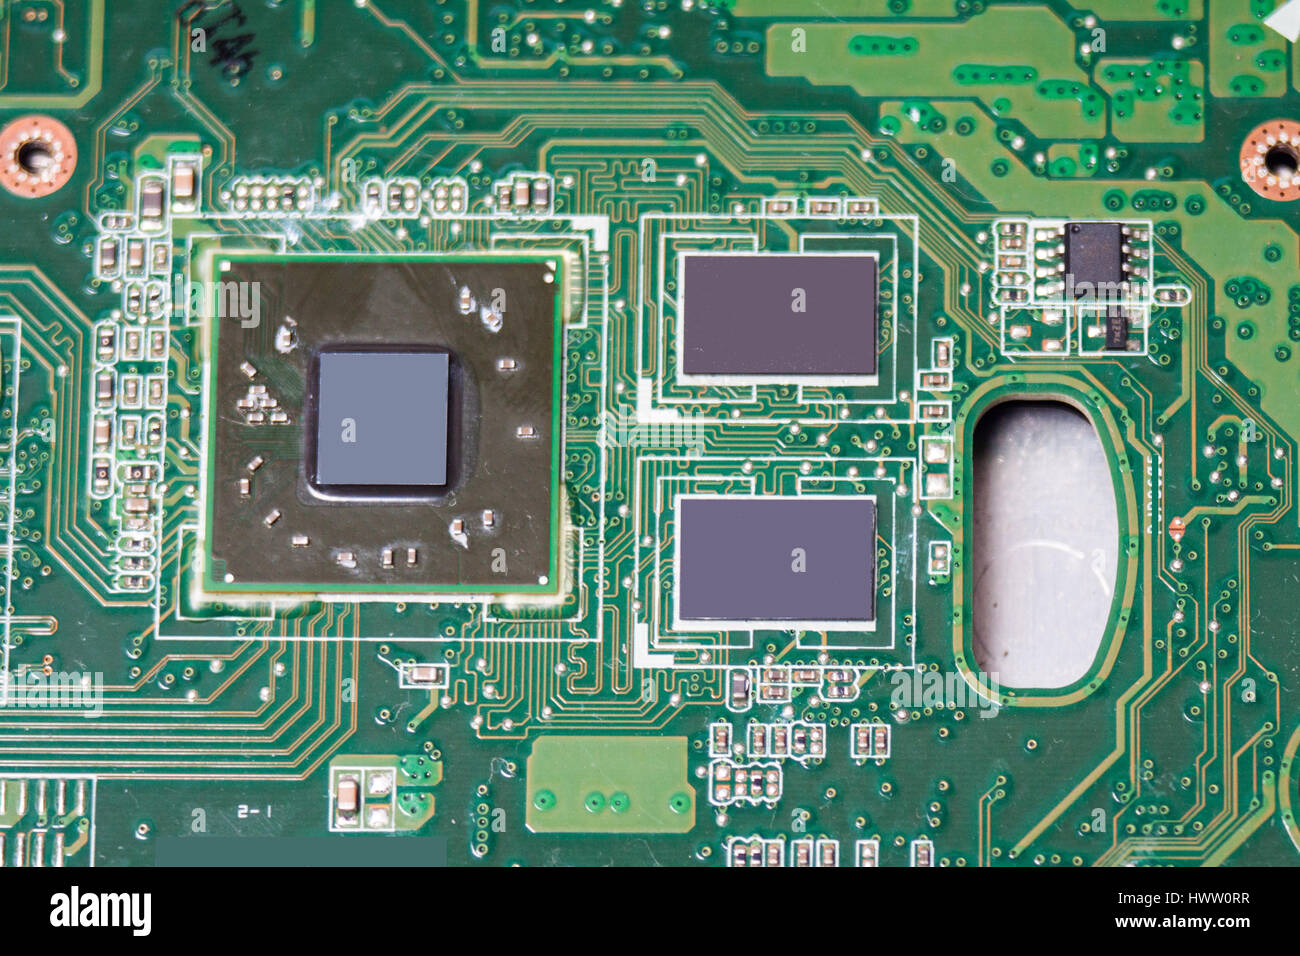 Nahaufnahme der elektronischen Platine mit Chips und Prozessoren, Mainboard  Laptop Computer Motherboard, CPU und Grafik-Card-Regelung des  elektronischen co Stockfotografie - Alamy